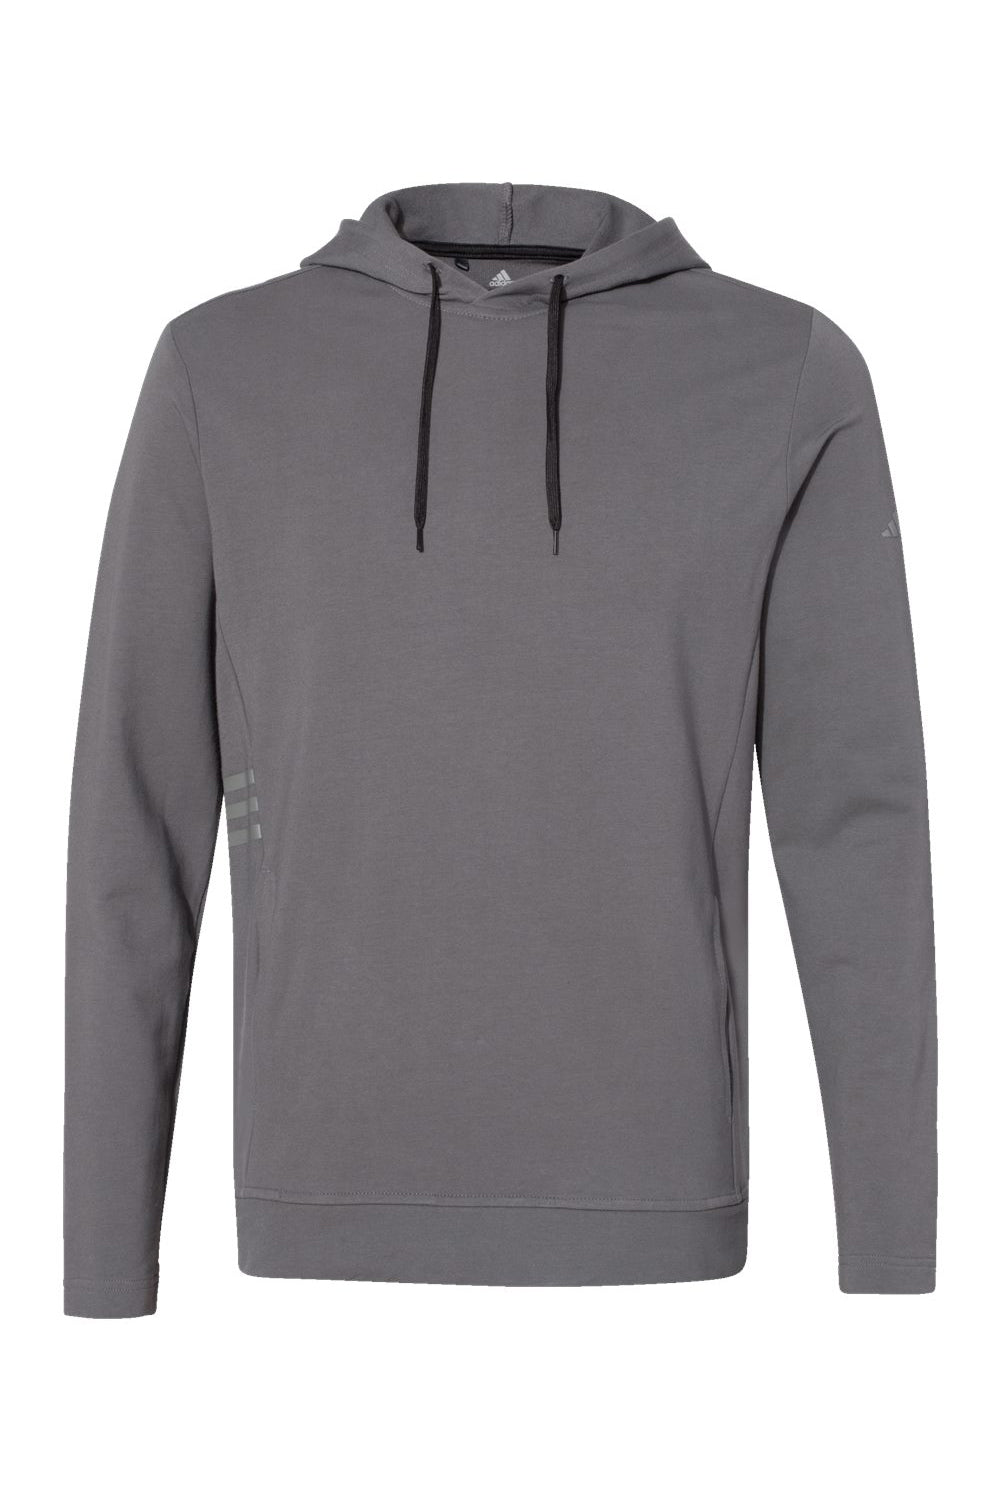 Adidas A450 Mens Hooded Sweatshirt Hoodie Grey Flat Front